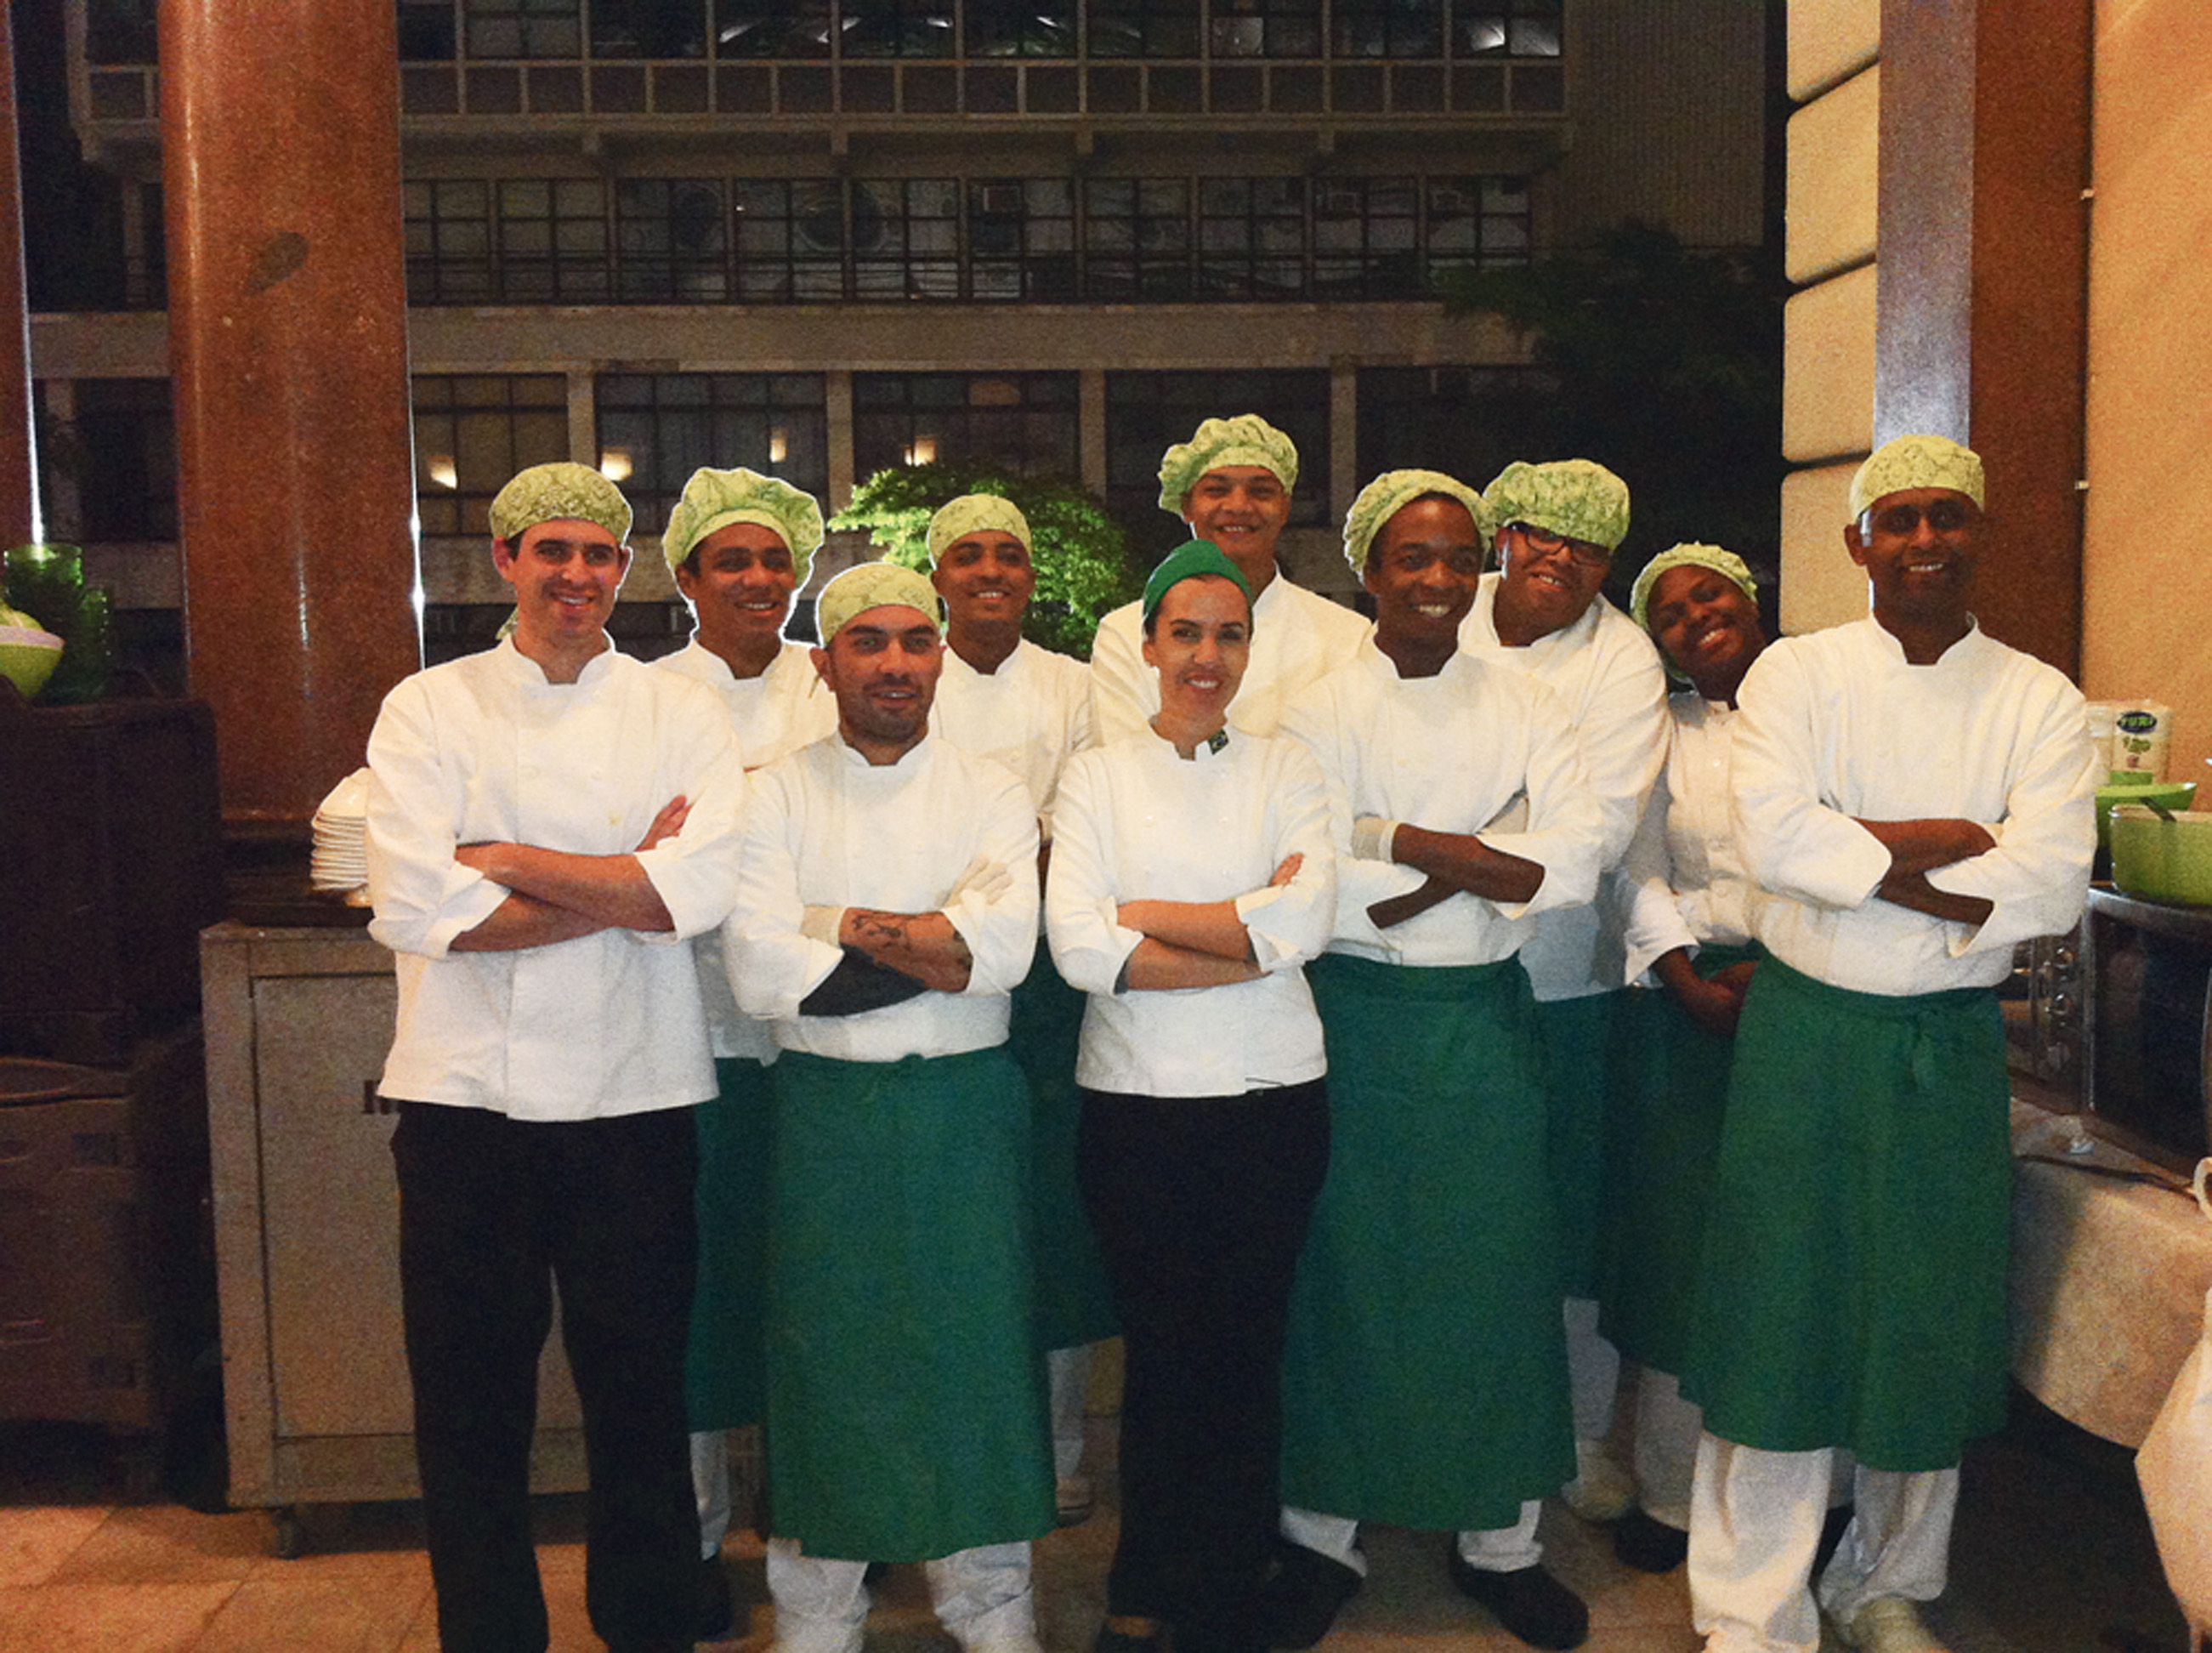 21:00 - Encerro o dia em evento no Theatro Municipal de São Paulo. Cozinhamos para 300 pessoas!